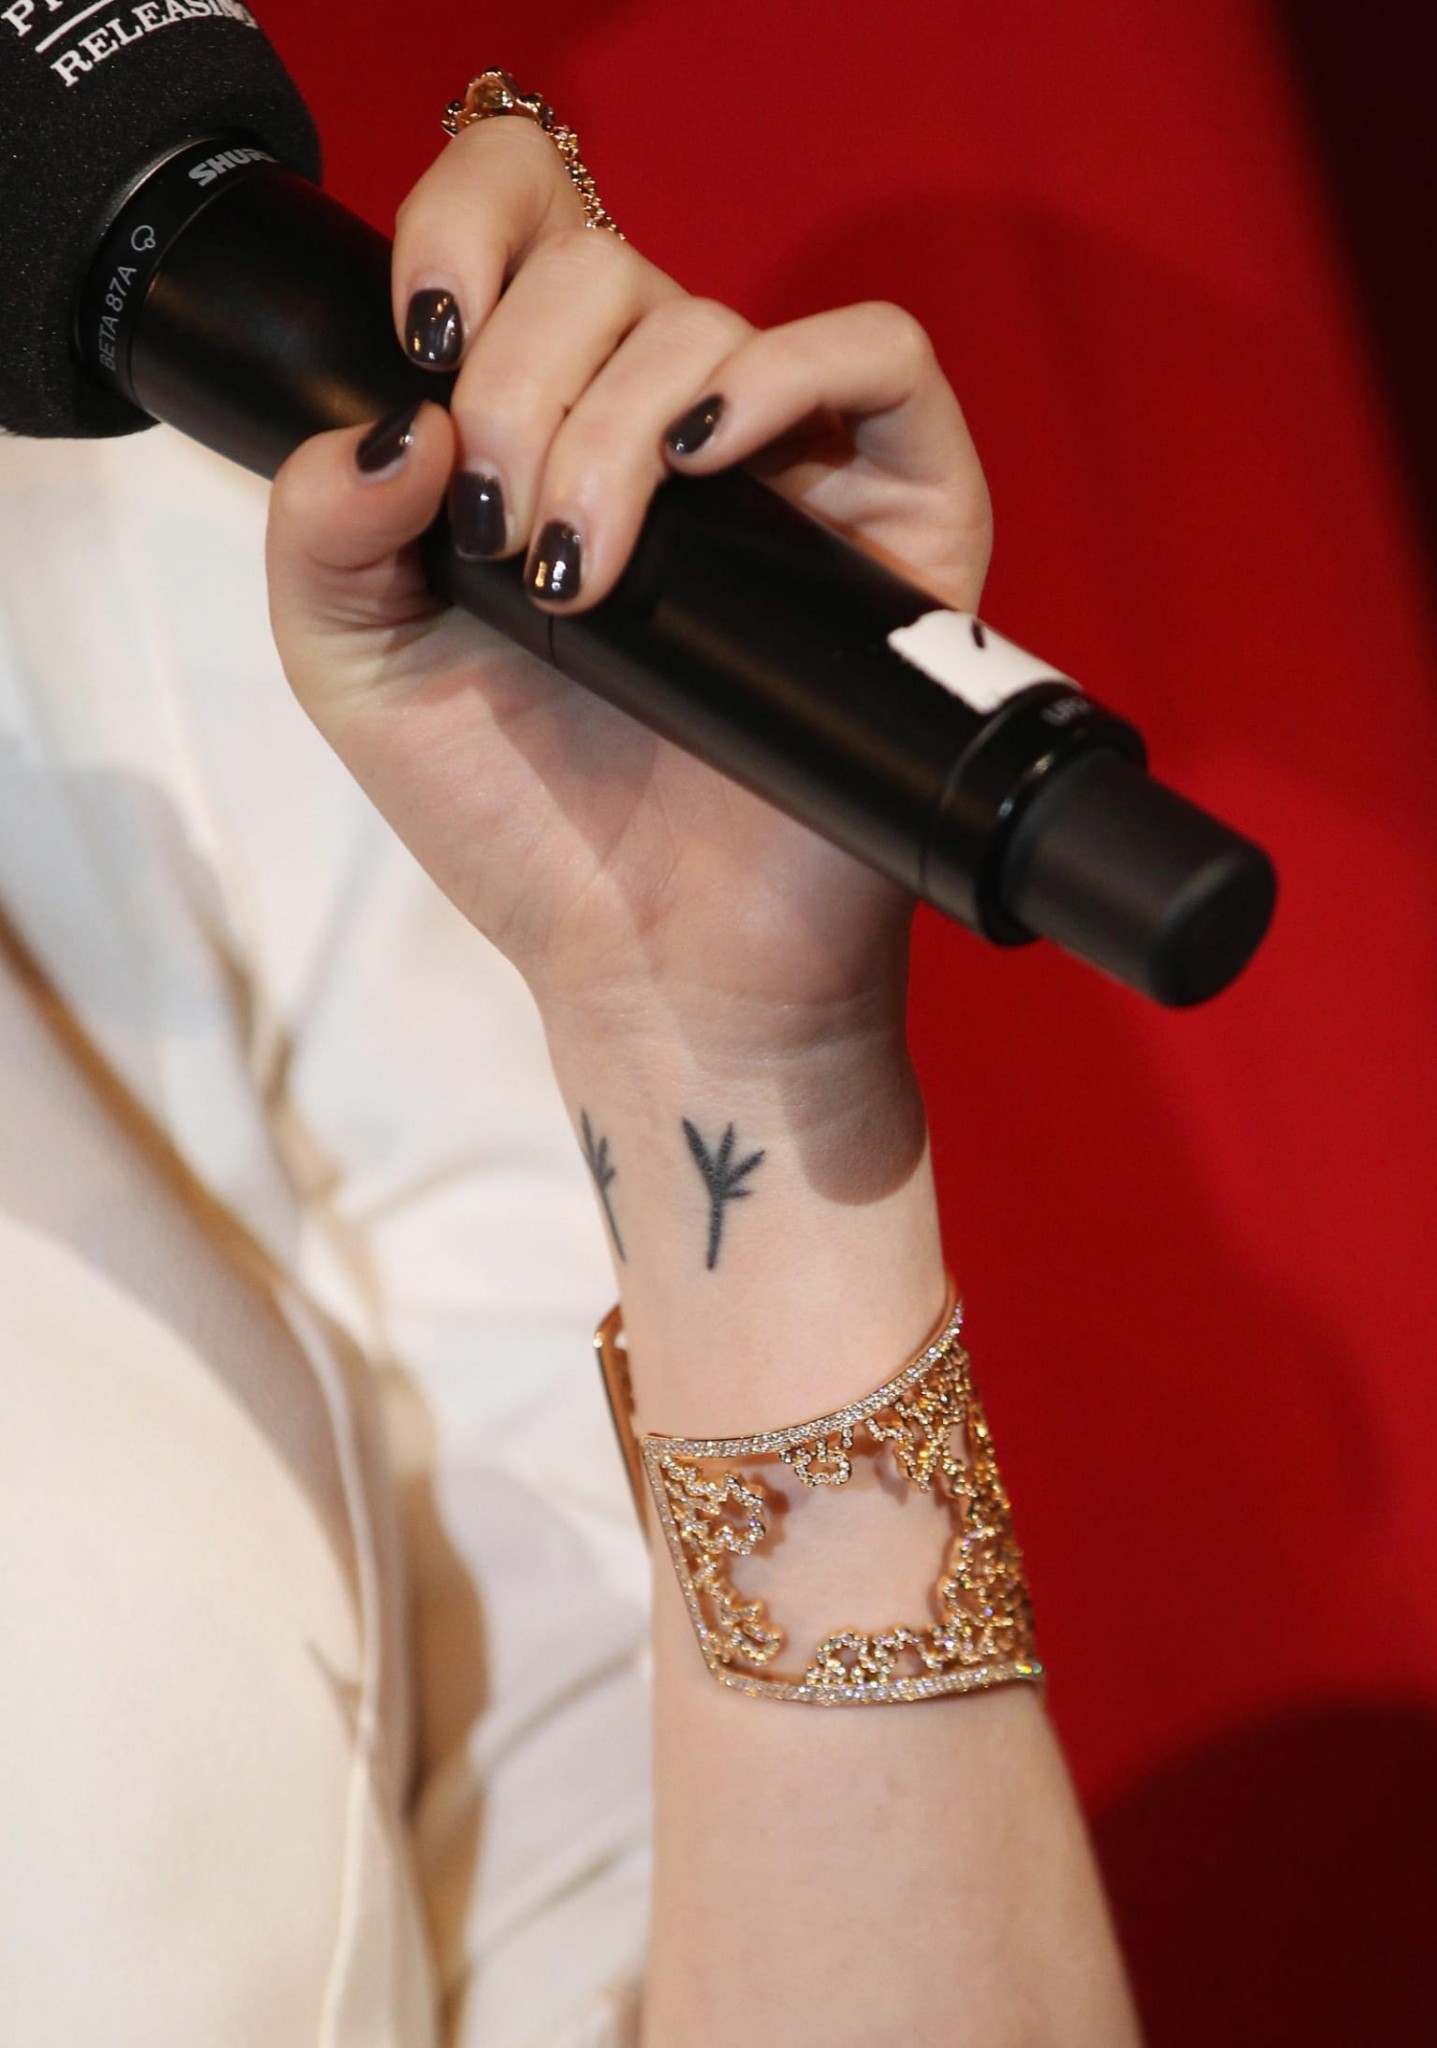 Emma Stone tetovanie